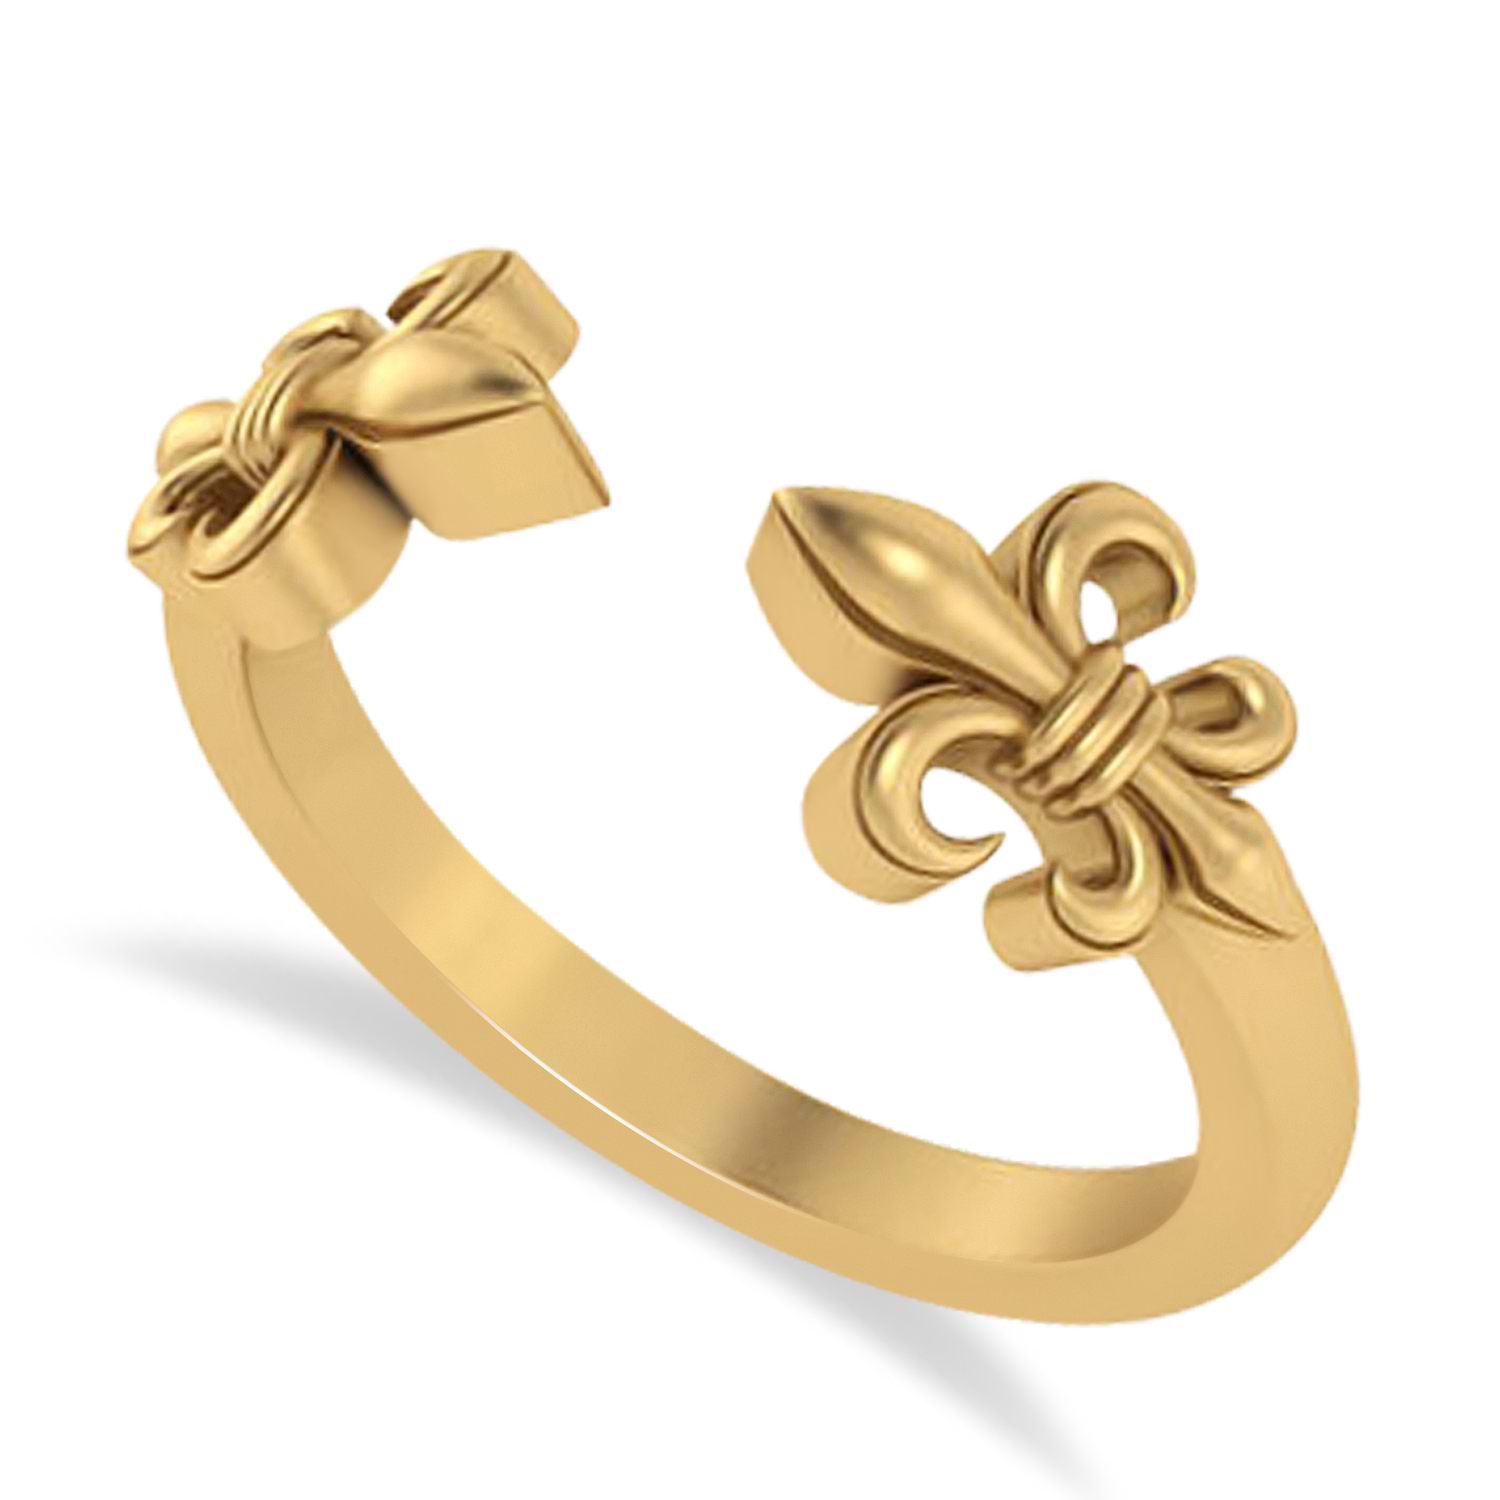 Fleur De Lis Open Concept Ring/Wedding Band 14k Yellow Gold